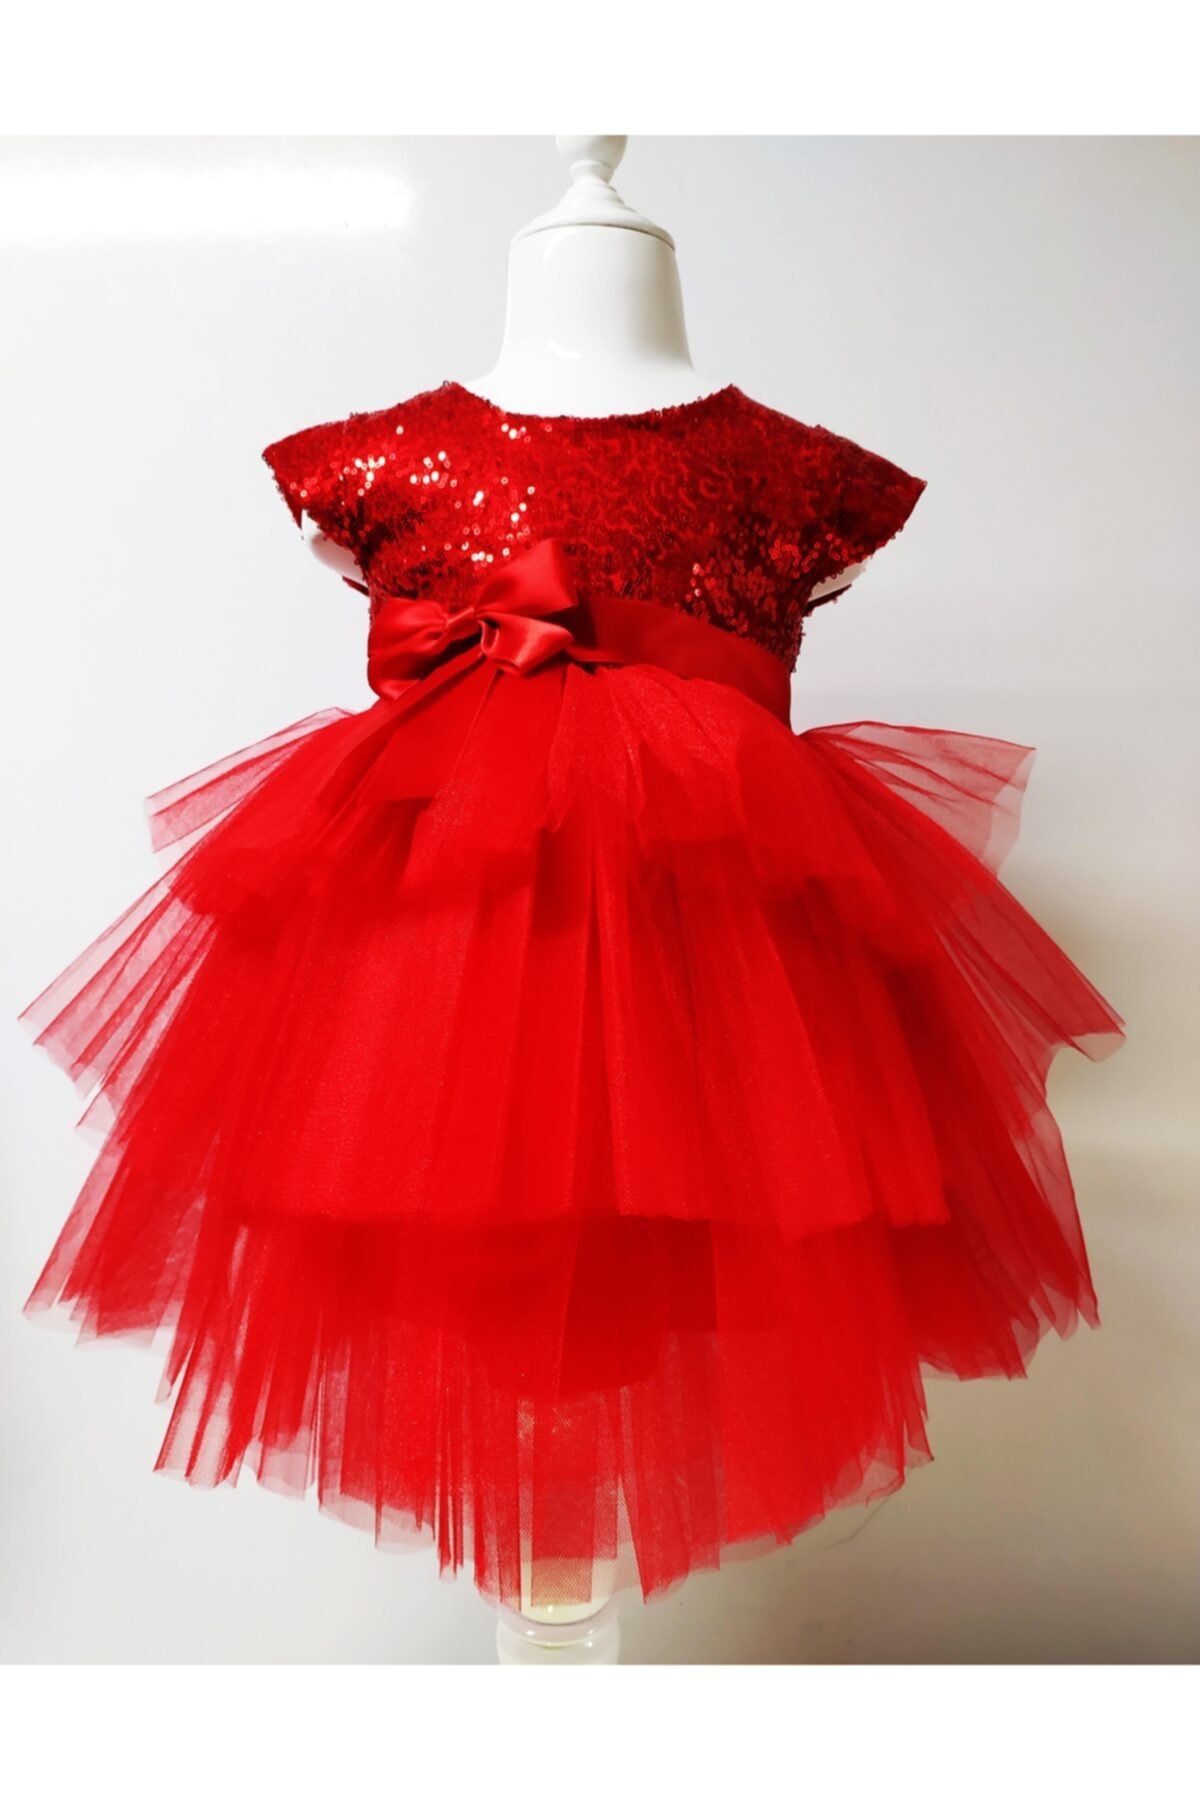 Durumini Kız Çocuk Kırmızı Tüllü Pul Payetli Parti Elbisesi